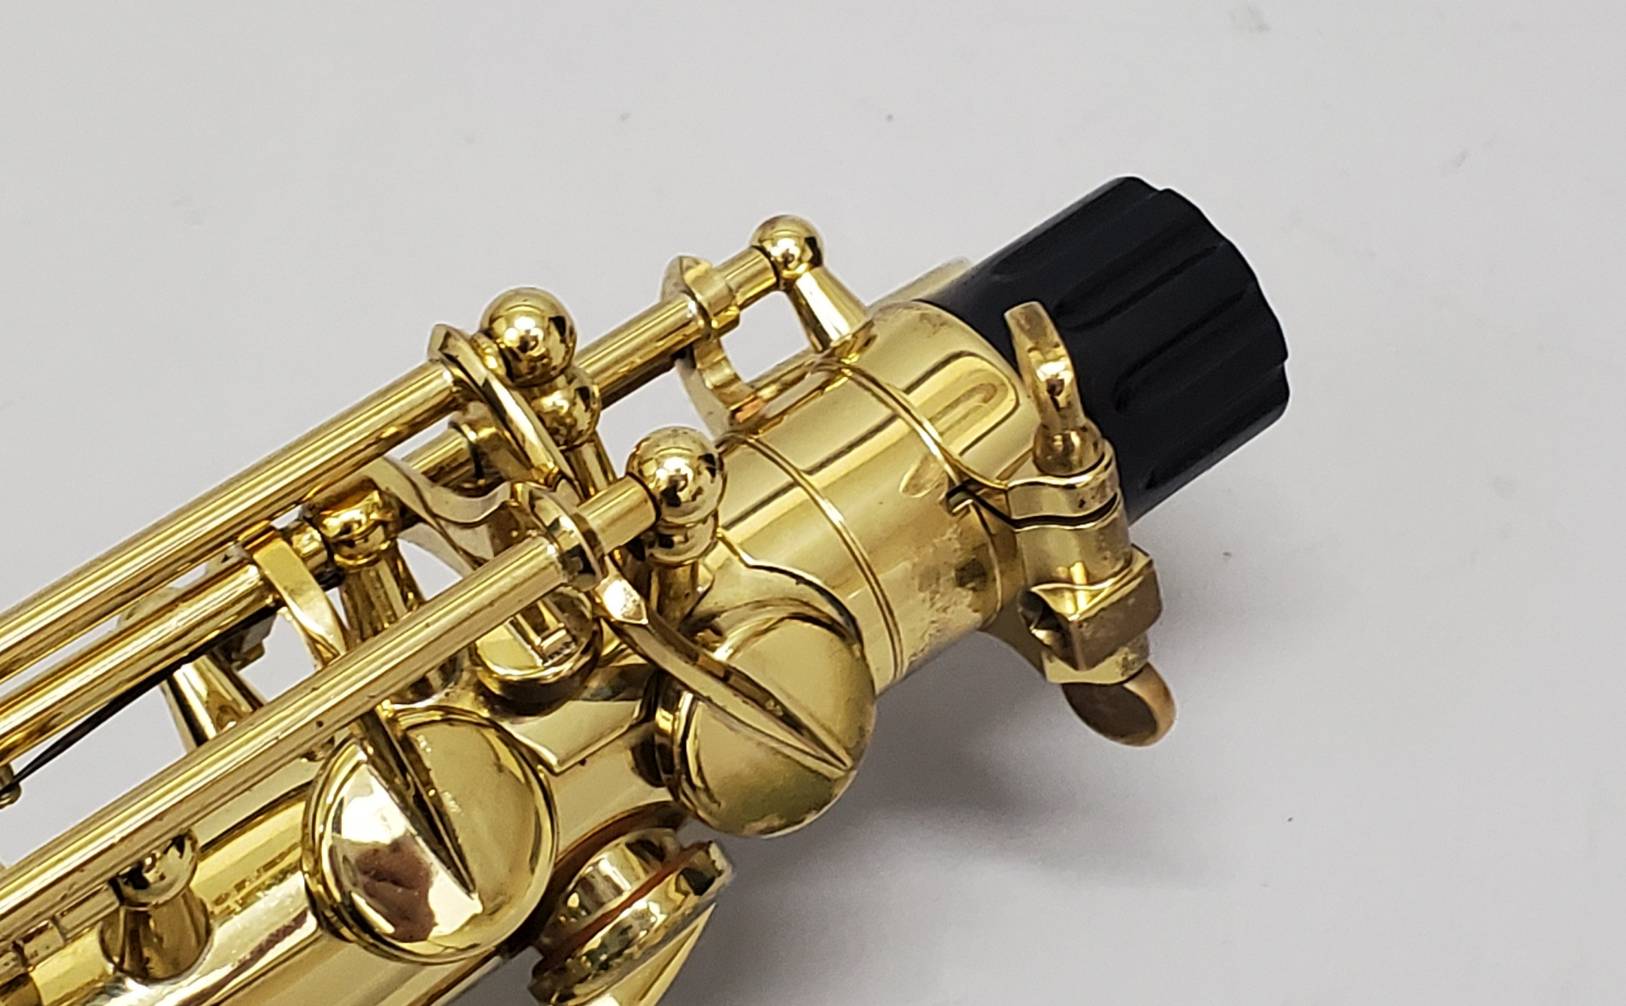 アルトサックス 初心者セット 入門用 E Saxophone 吹奏楽 668 全店販売中 - 管楽器・吹奏楽器